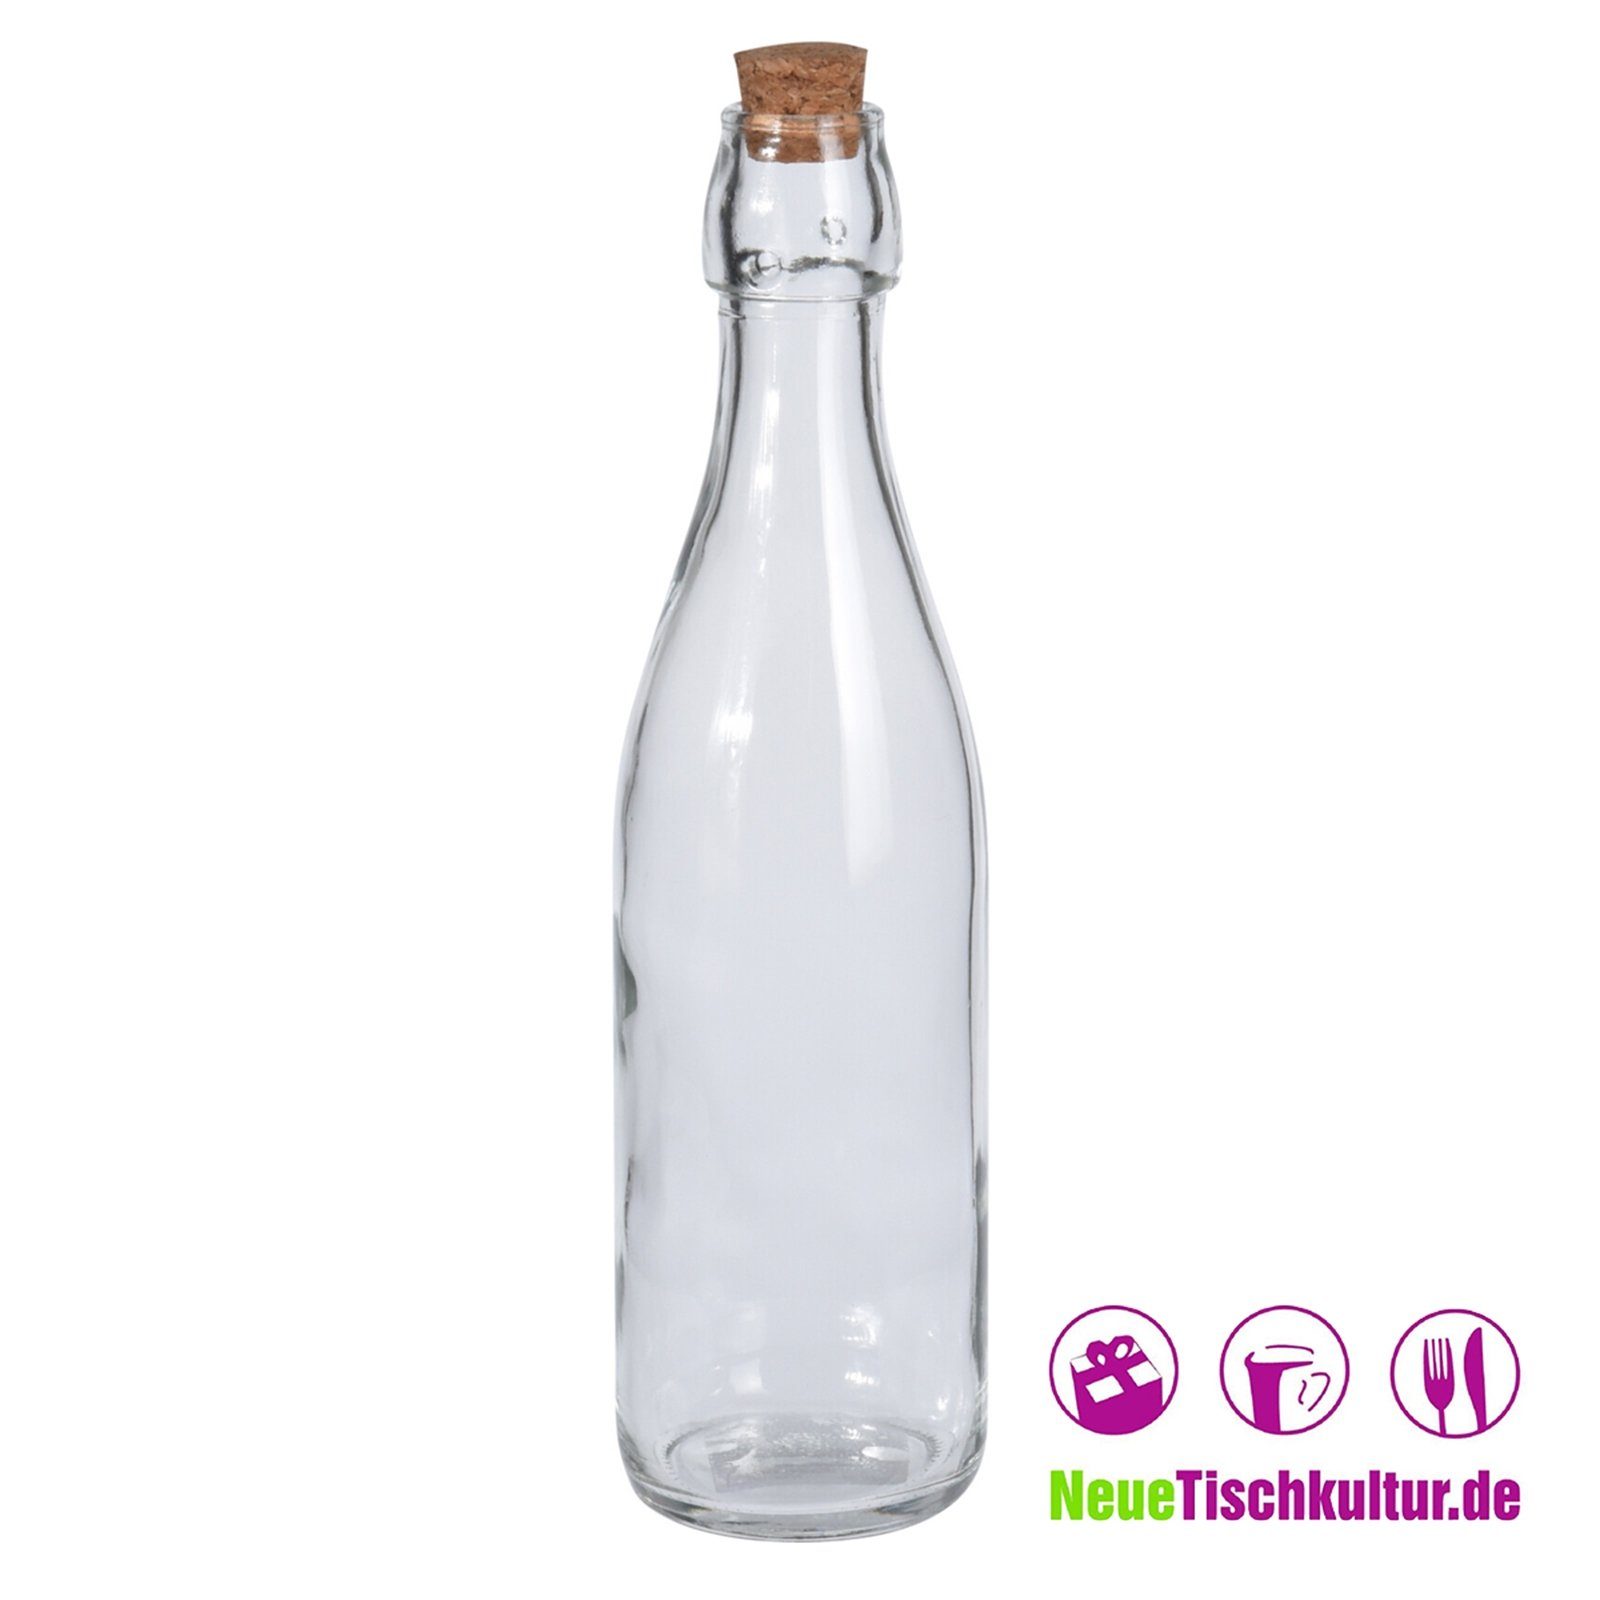 Neuetischkultur Vorratsglas Glasflasche Korkverschluss, 0,5 Liter Glas mit